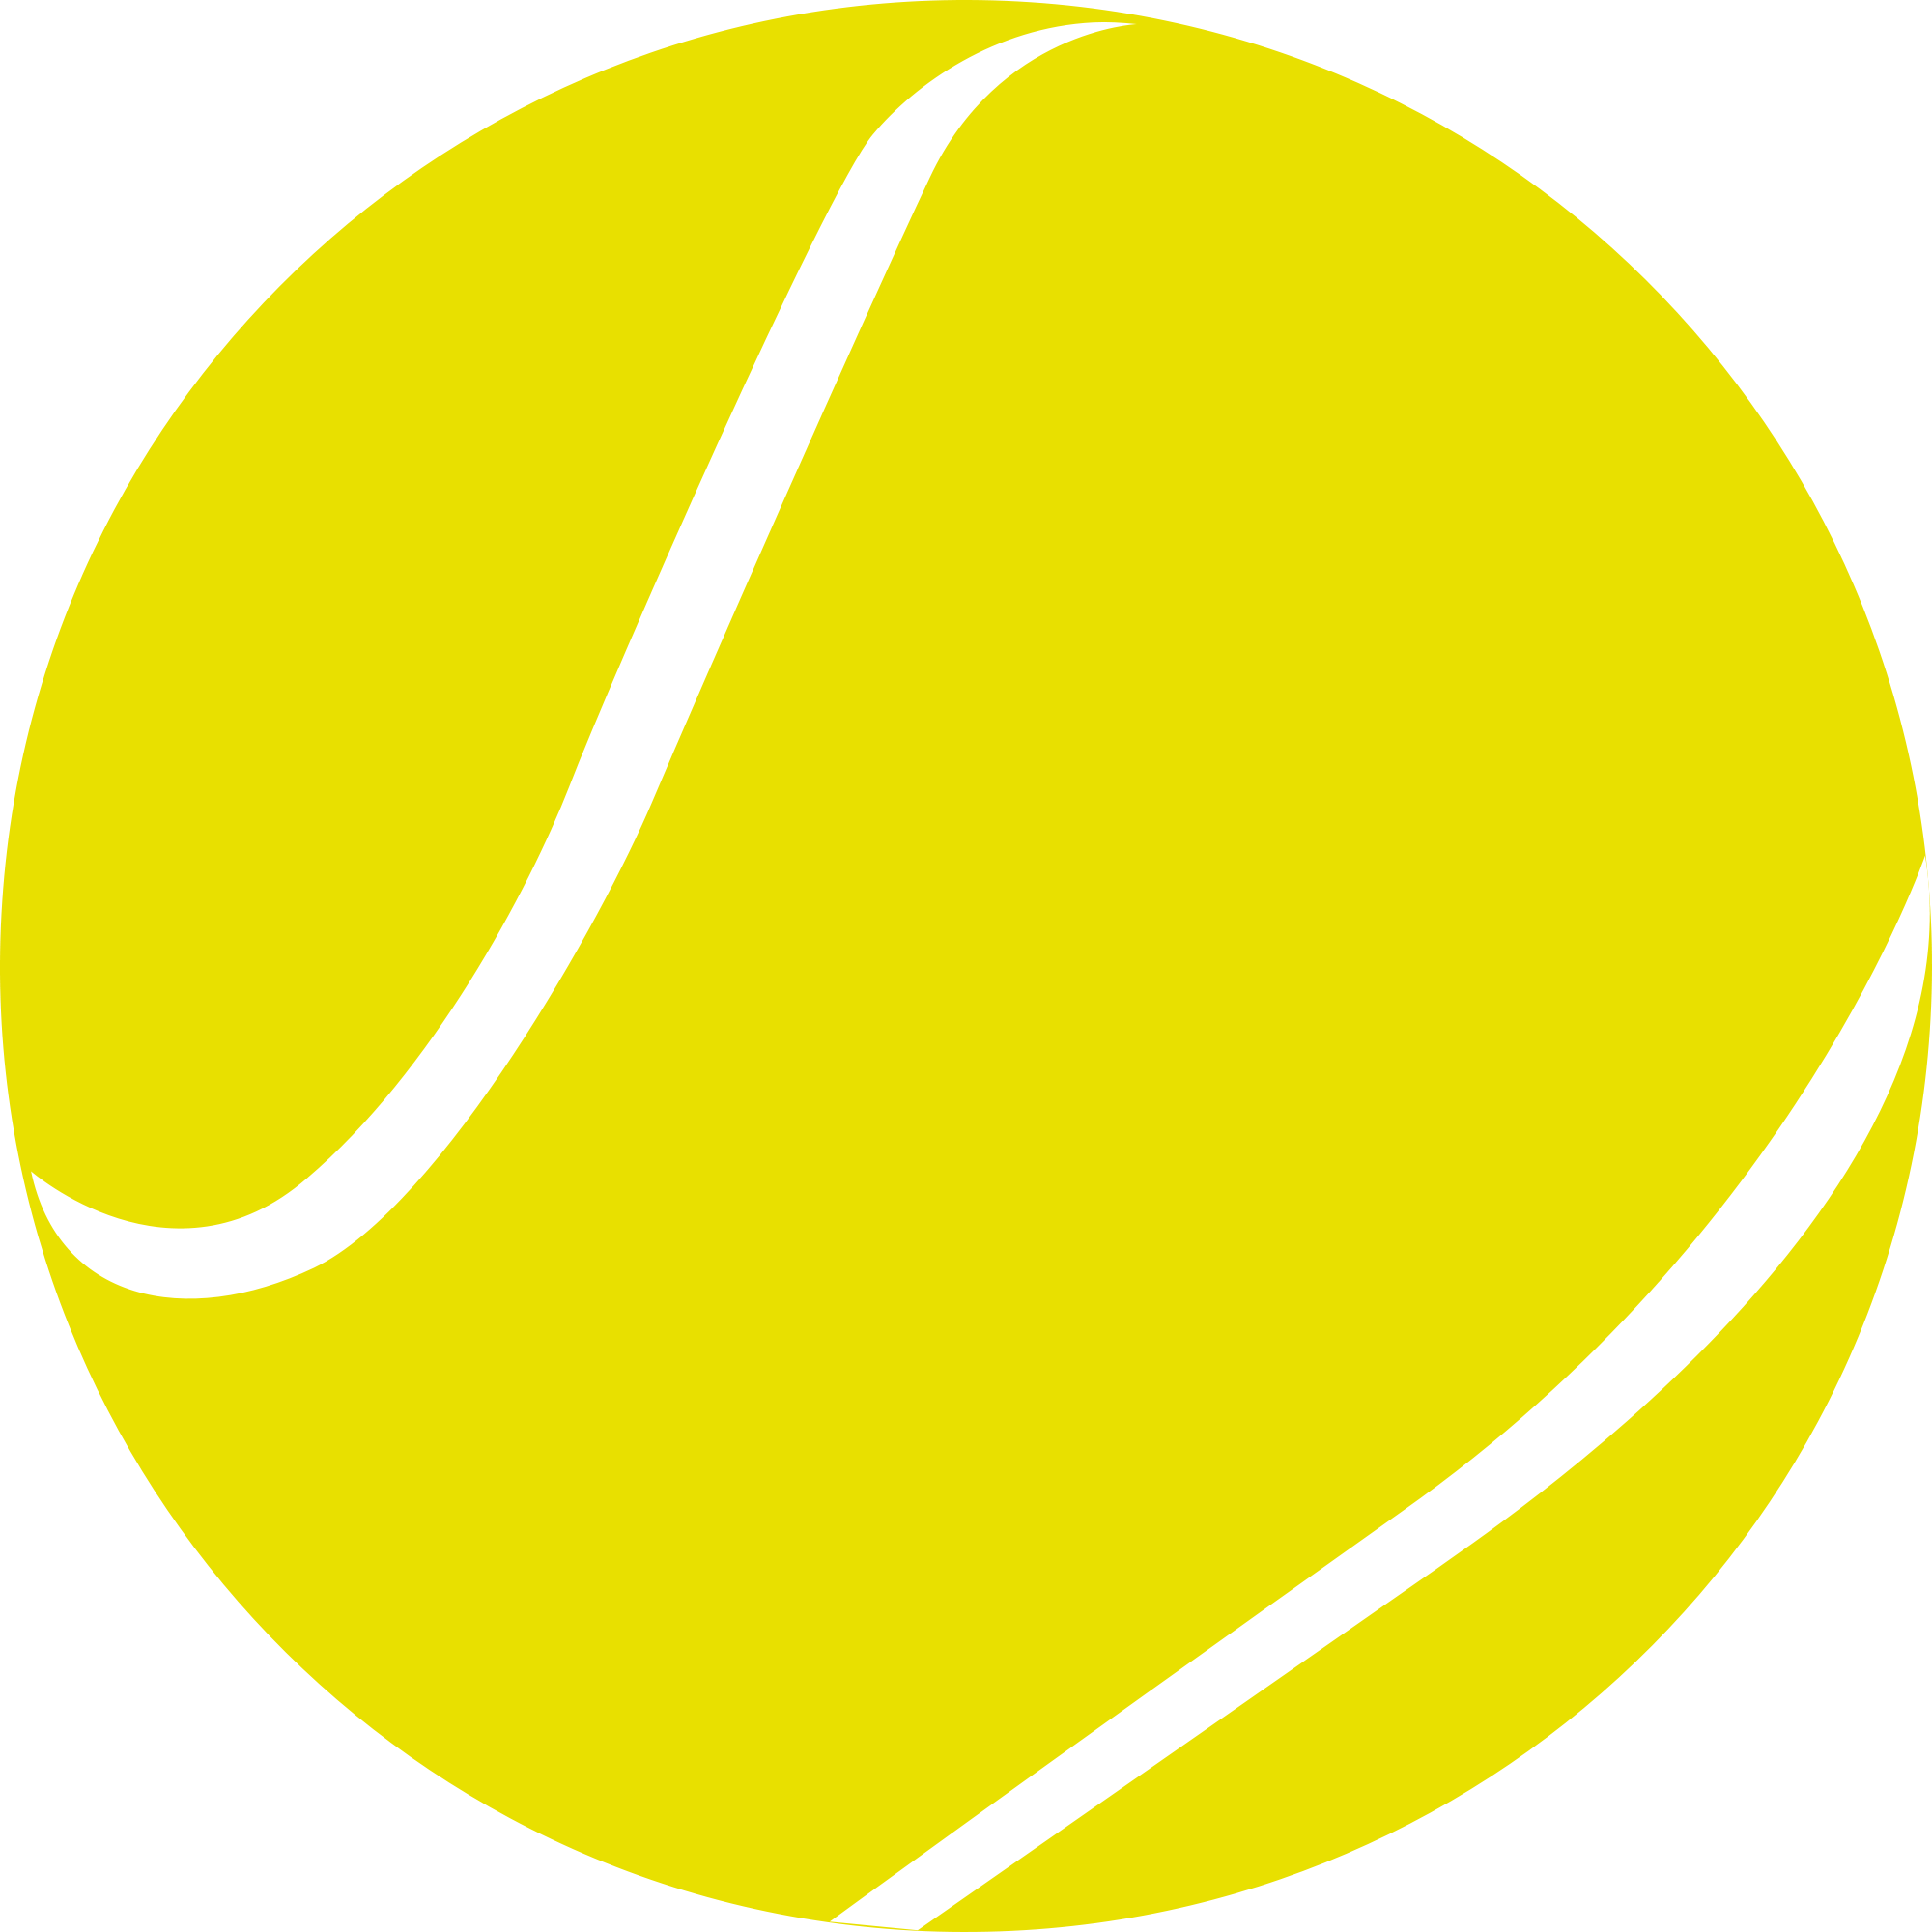 Image PNG à balle de tennis avec fond Transparent